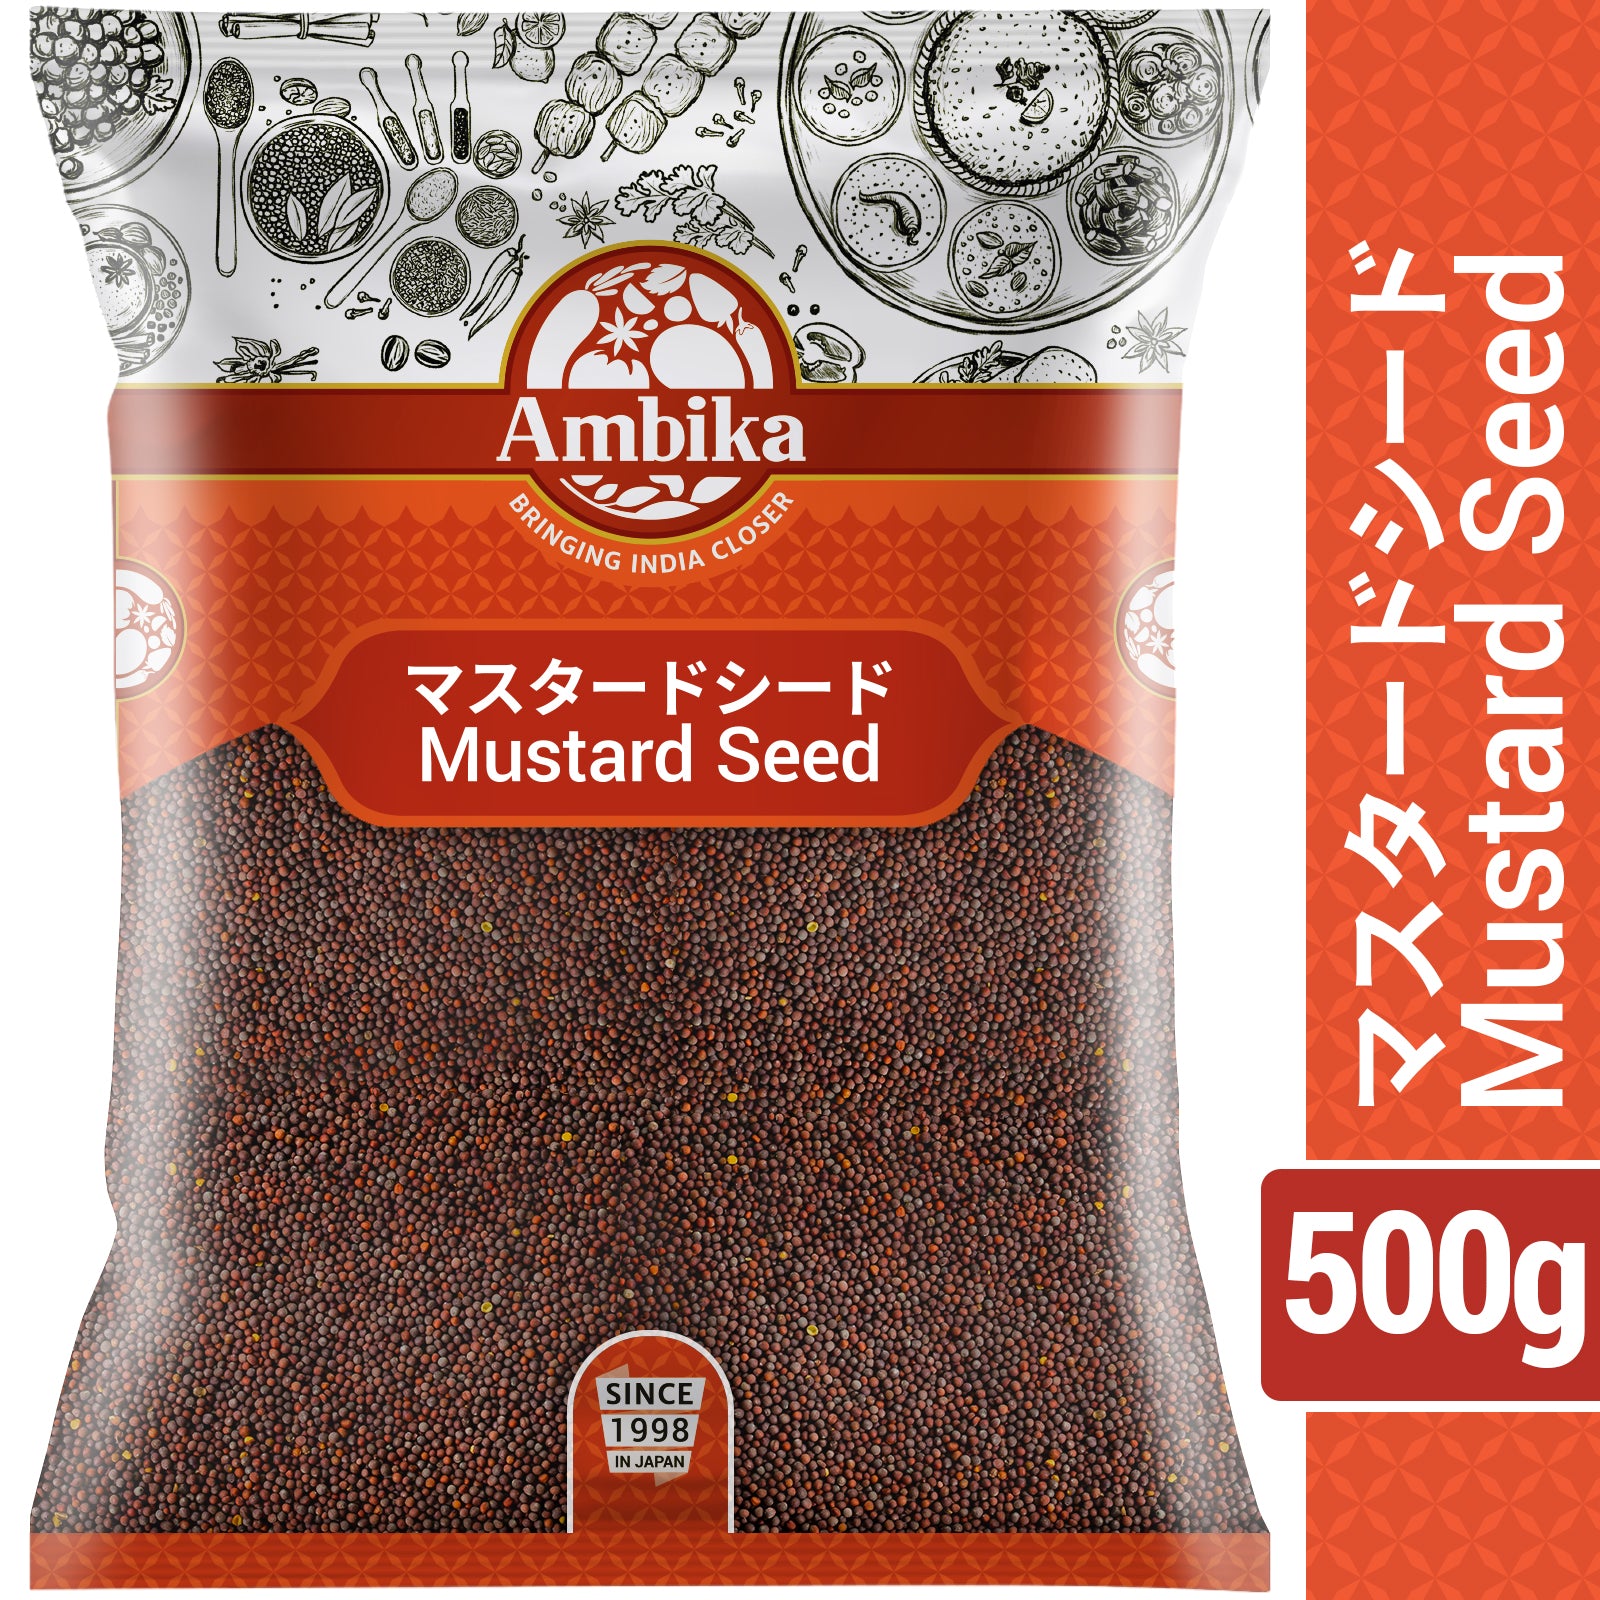 Ambika Mustard Seed 500g